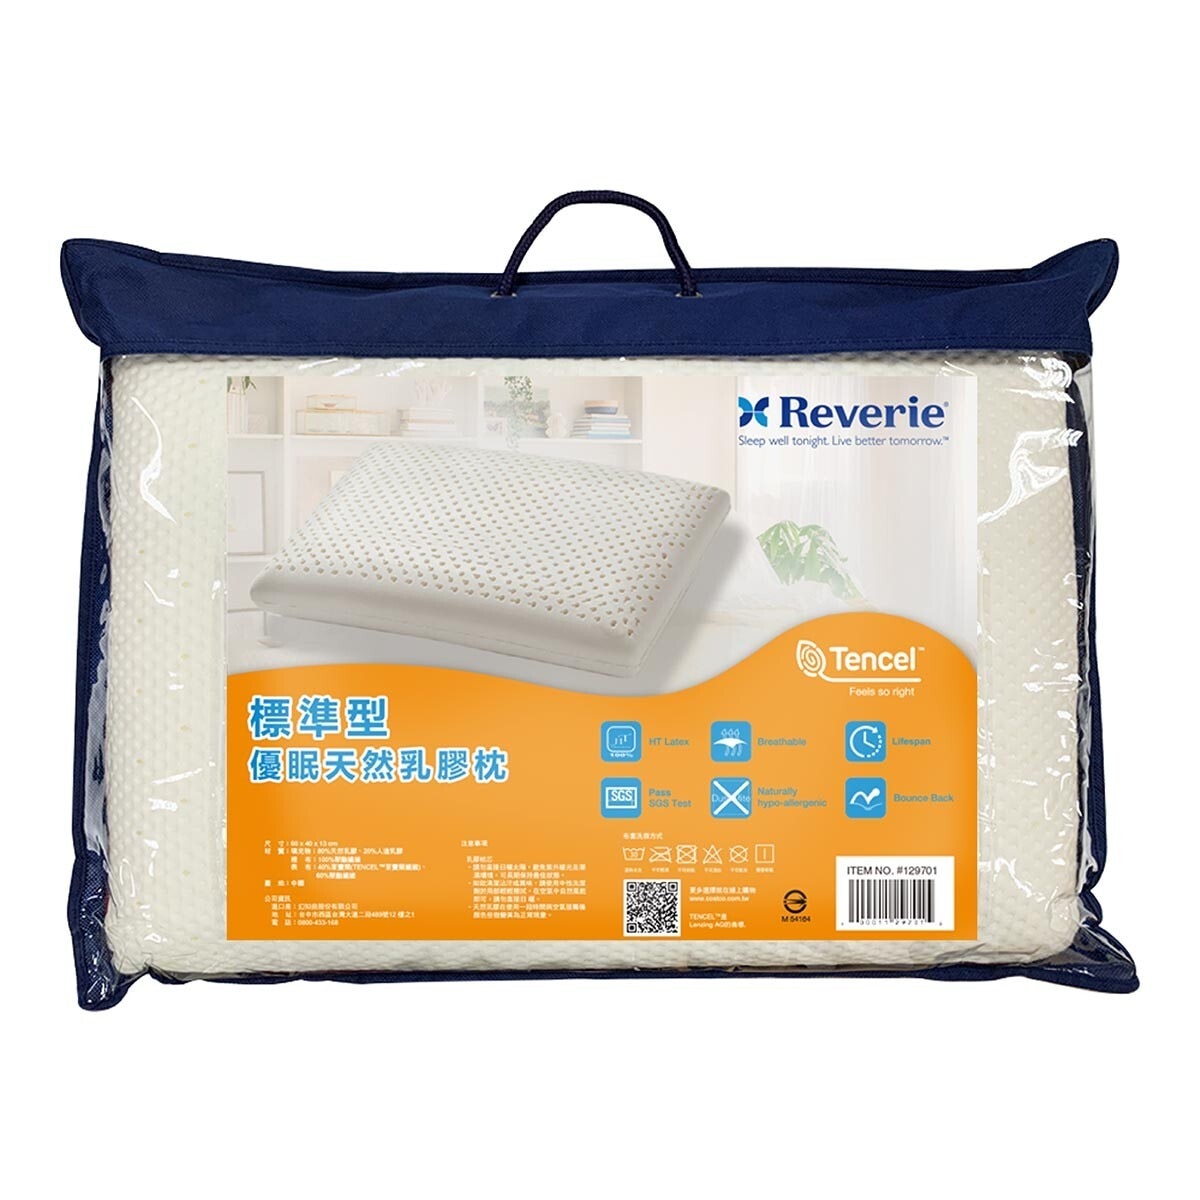 Reverie 標準型優眠天然乳膠枕 60公分 X 40公分 X 13公分